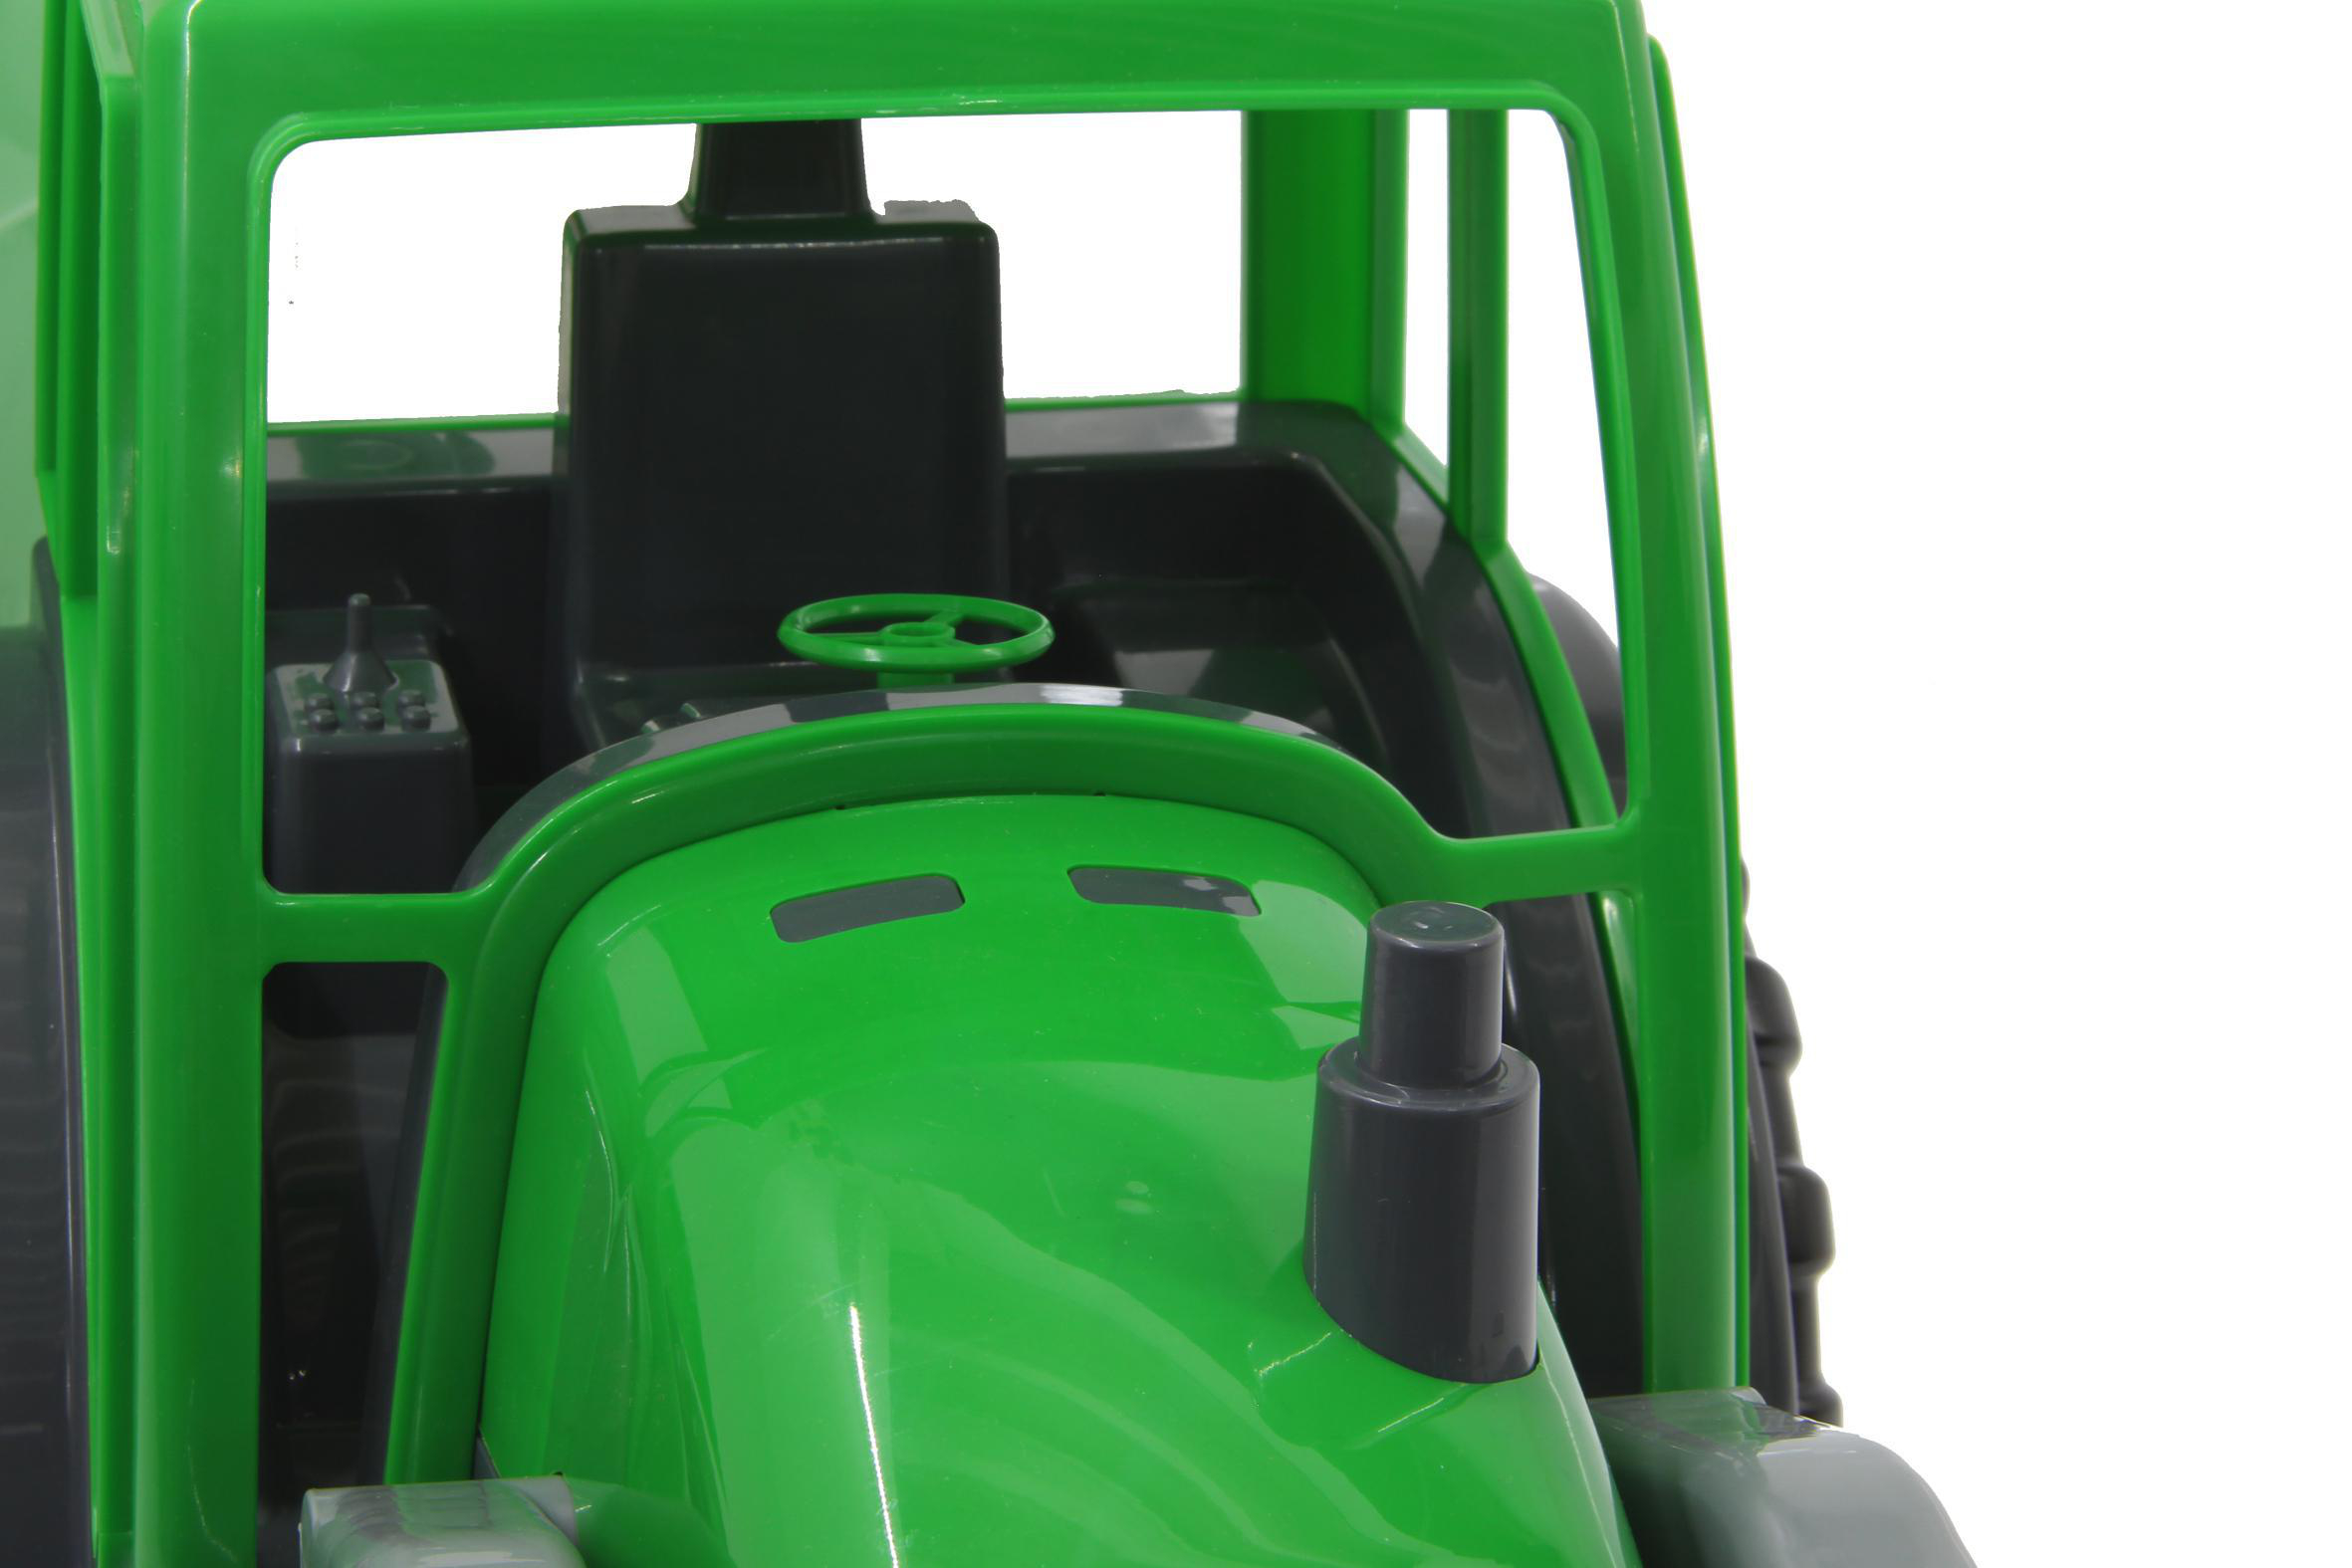 Spielzeugfahrzeug JAMARA XL Power Loader Frontlader Traktor mit Grün